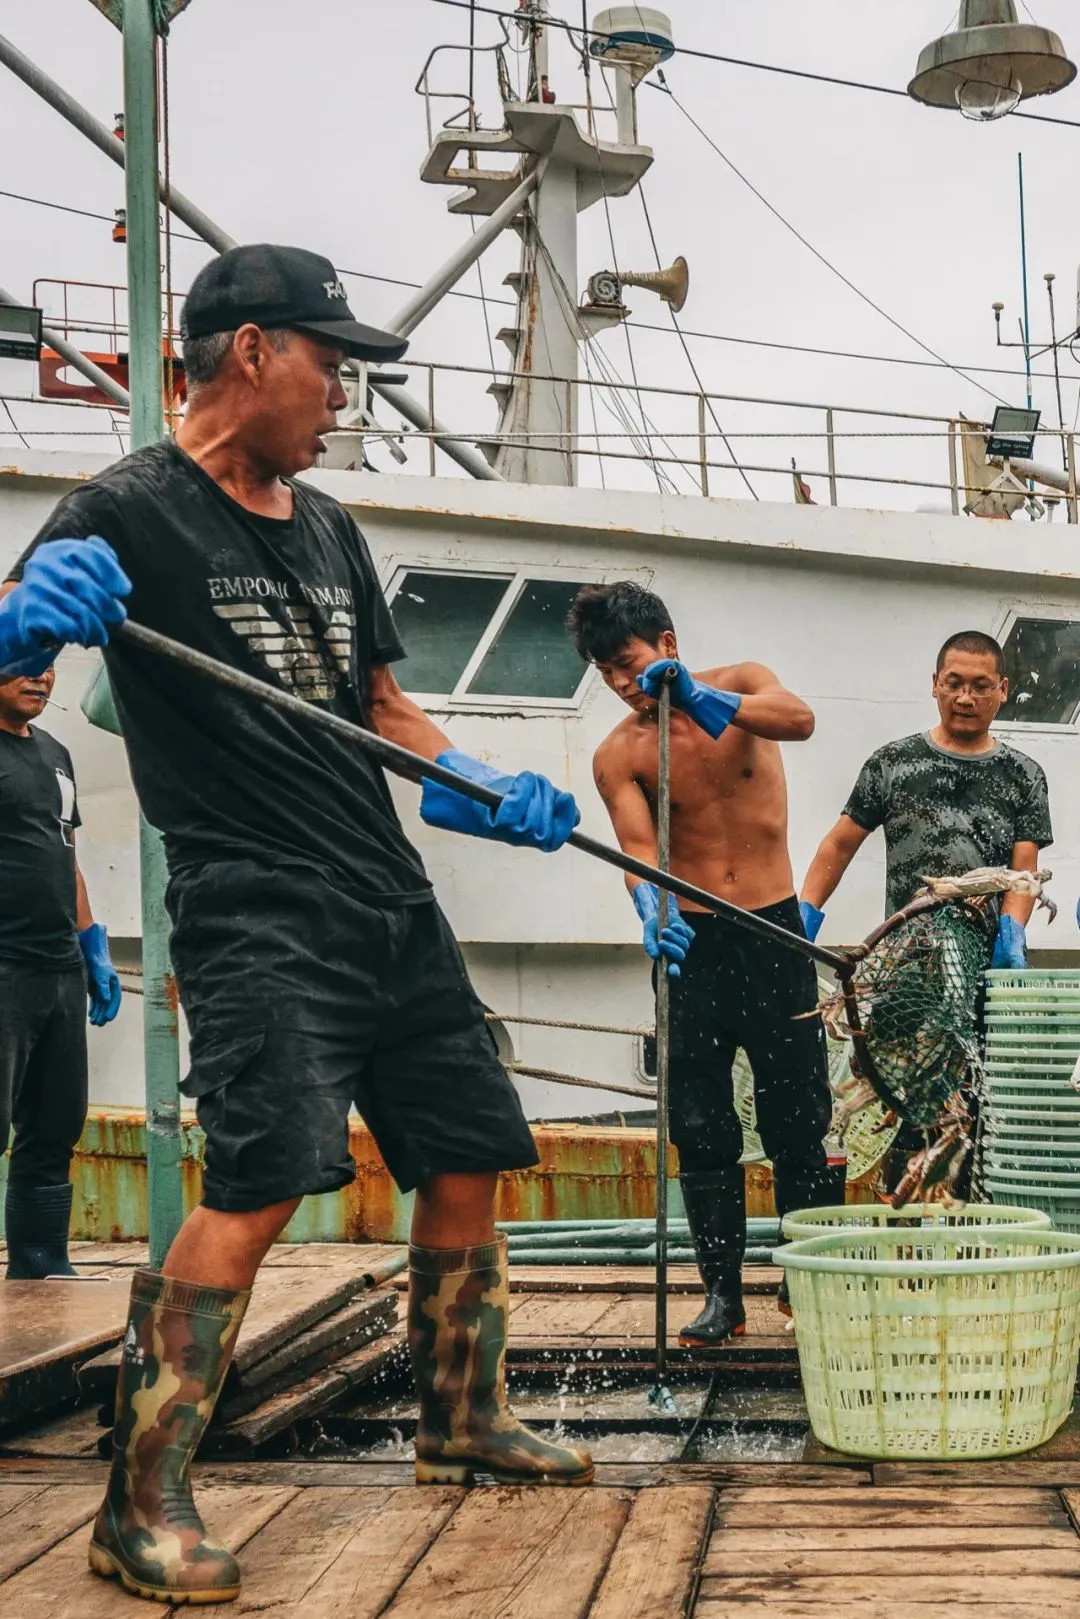 渔船上劳作的渔民。摄影/吴学文